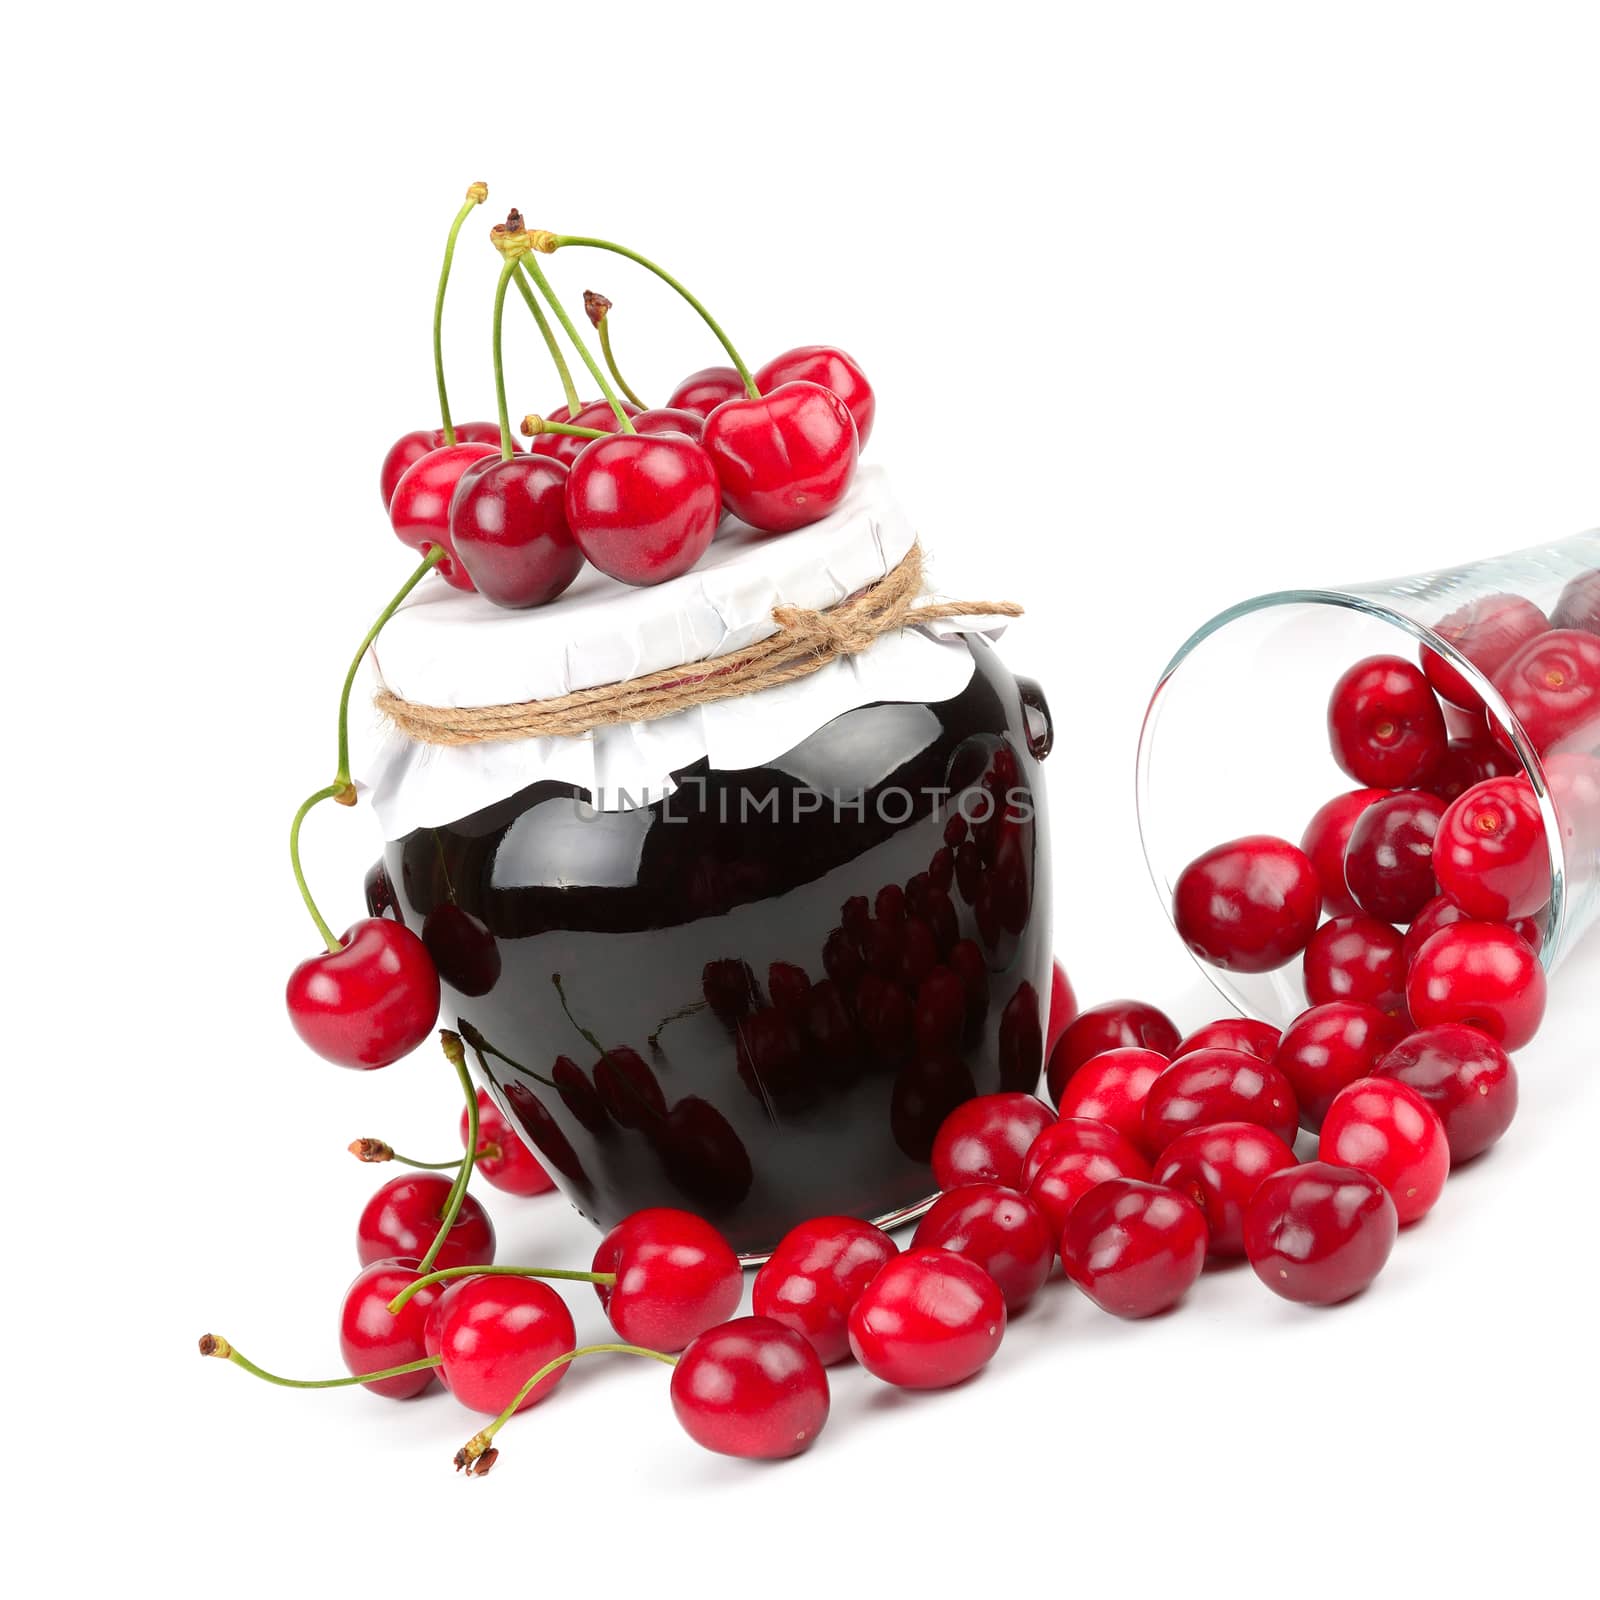  delicious cherry jam and cherry fruit juicy